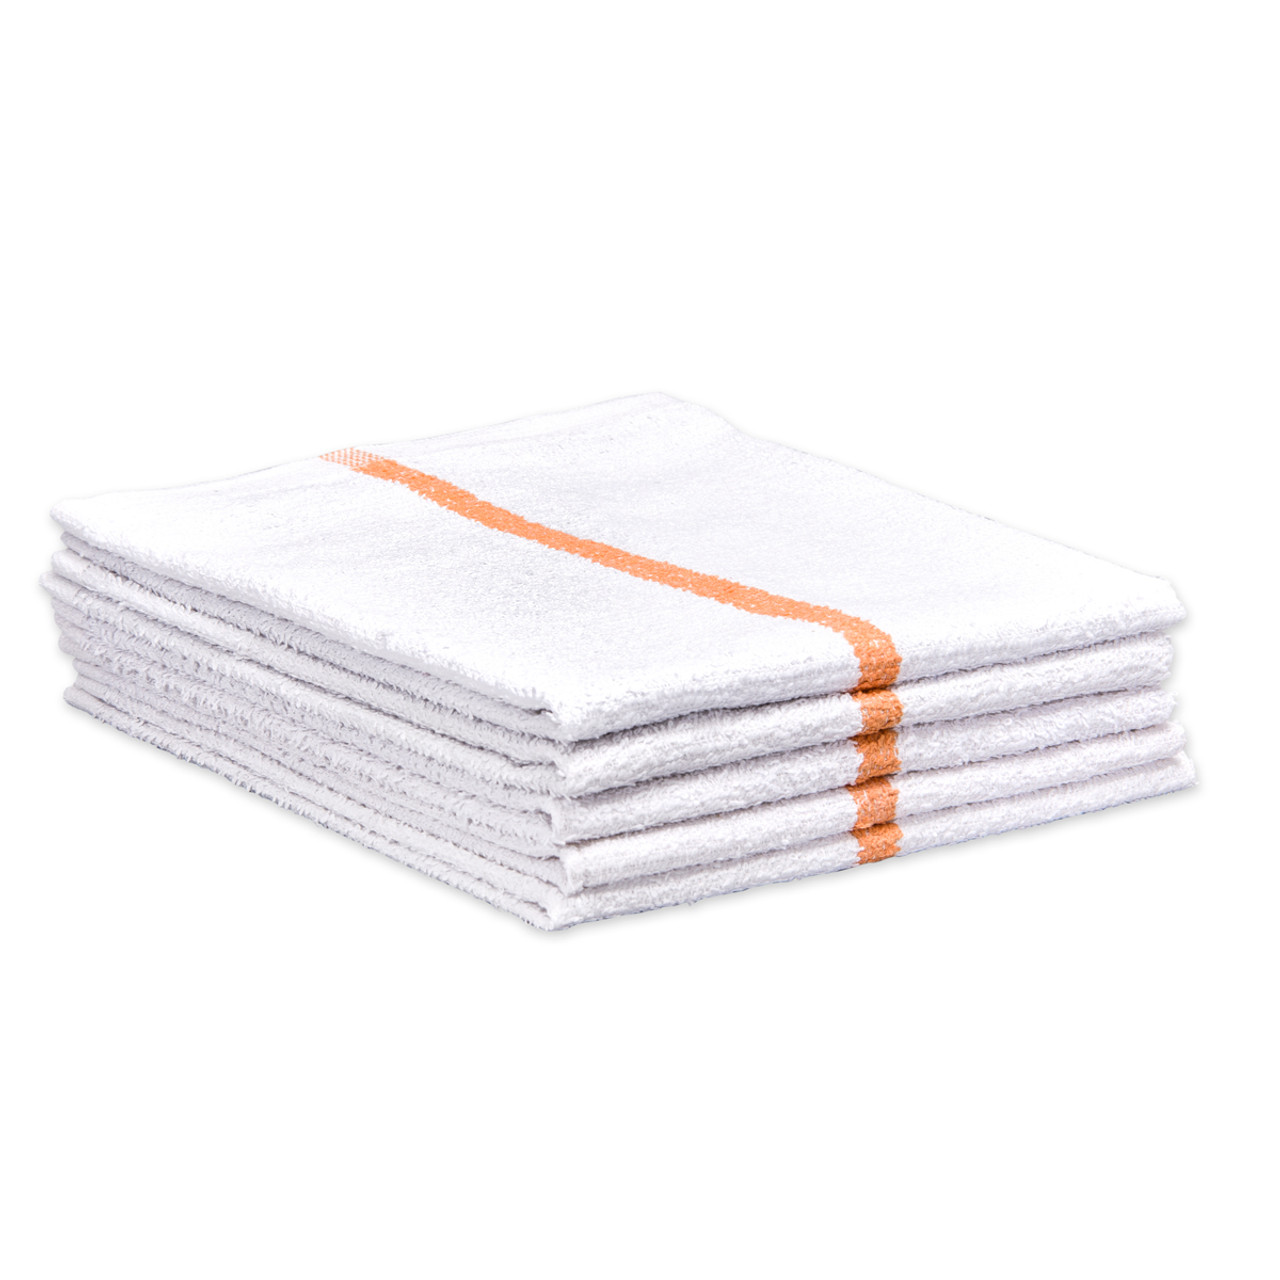 16X19 Wholesale White Bar Towels - Towel Supercenter